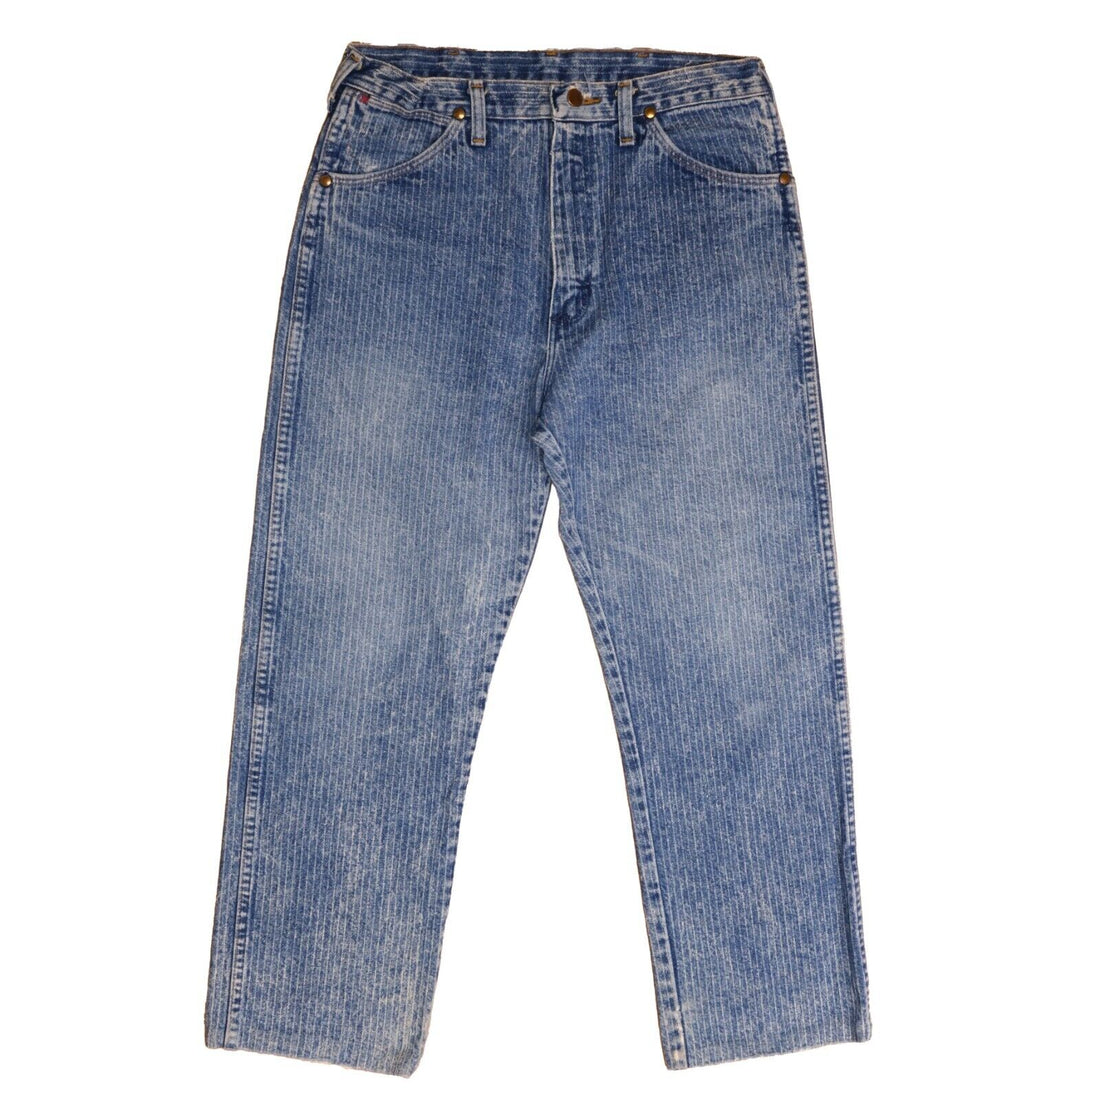 Vintage Wrangler Cowboy Cut Denim Jeans Pants Size 34 X 34 1970s 70s